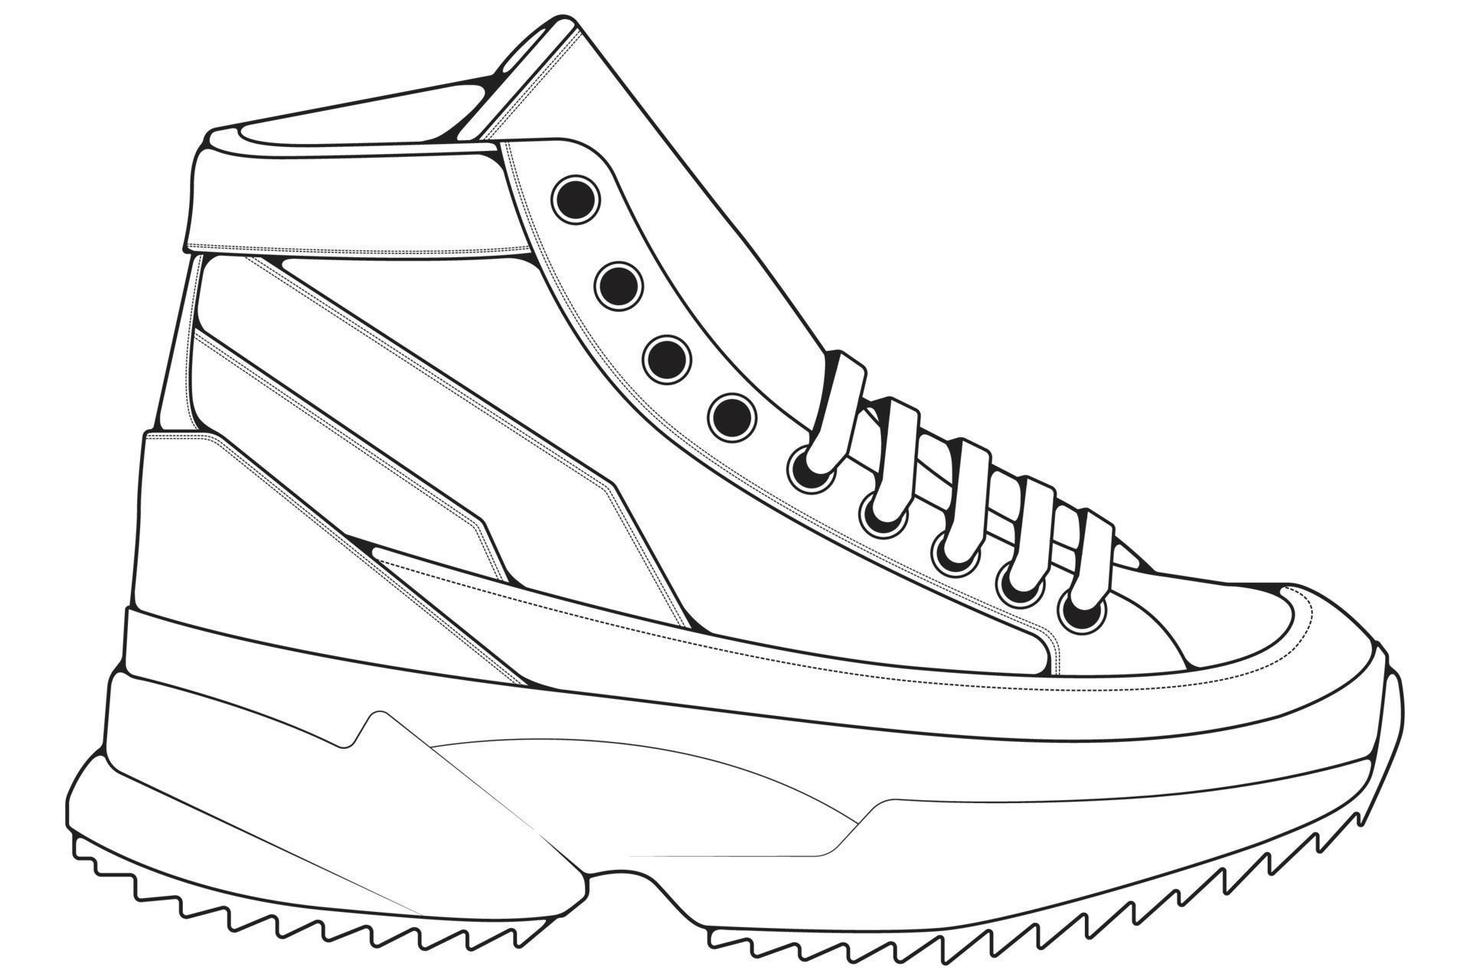 delinear tênis legal. vetor de desenho de contorno de tênis de sapatos, tênis desenhados em um estilo de desenho.